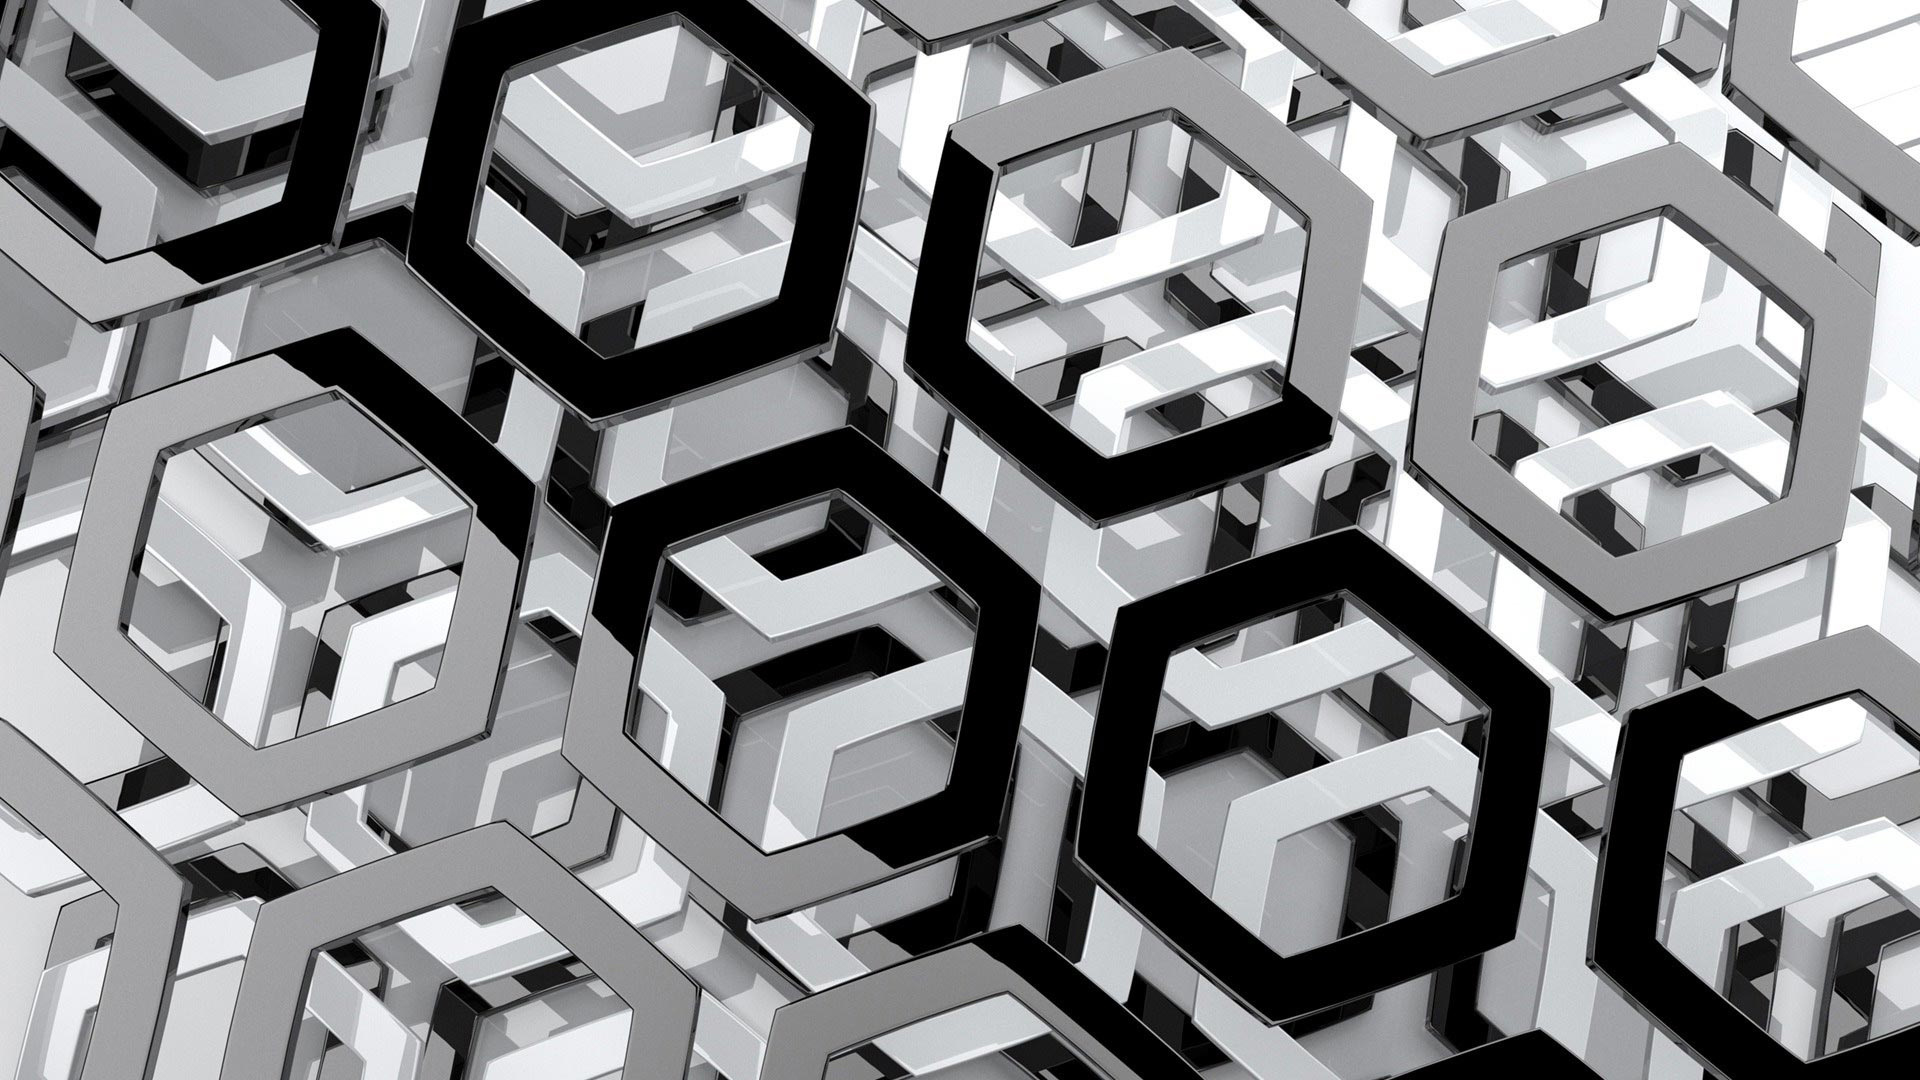 Hexagon wallpaper, 4K resolution, User-submitted art, Hexagon theme, 1920x1080 Full HD Desktop